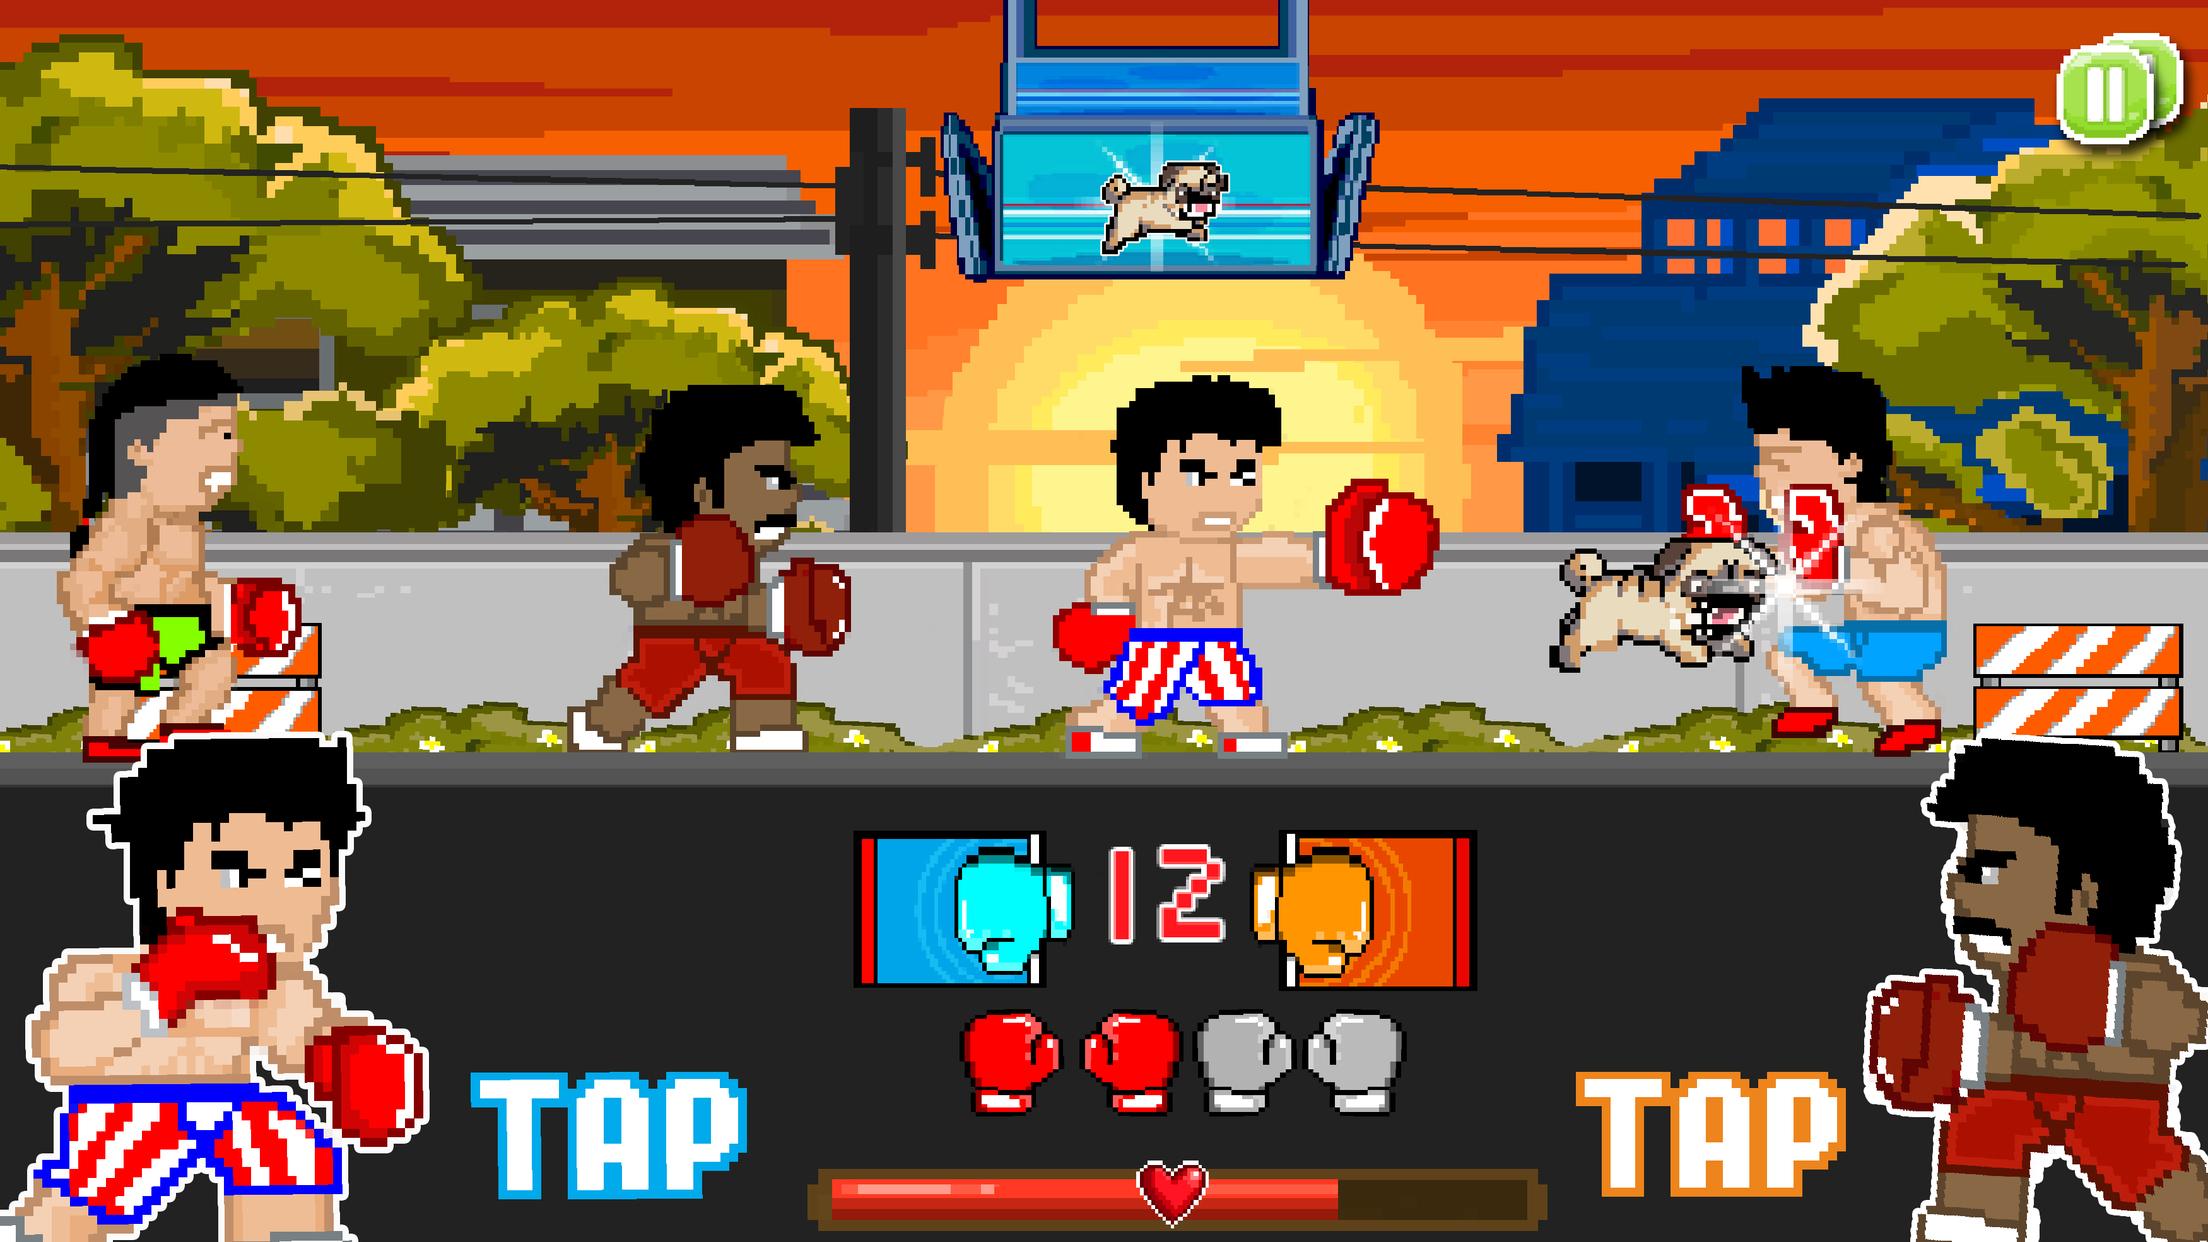 Игры бить лиц. Пиксельная игра про бокс. Игра супер бойцы. Игра про боксера Punch. 8 Битная игра про боксера.